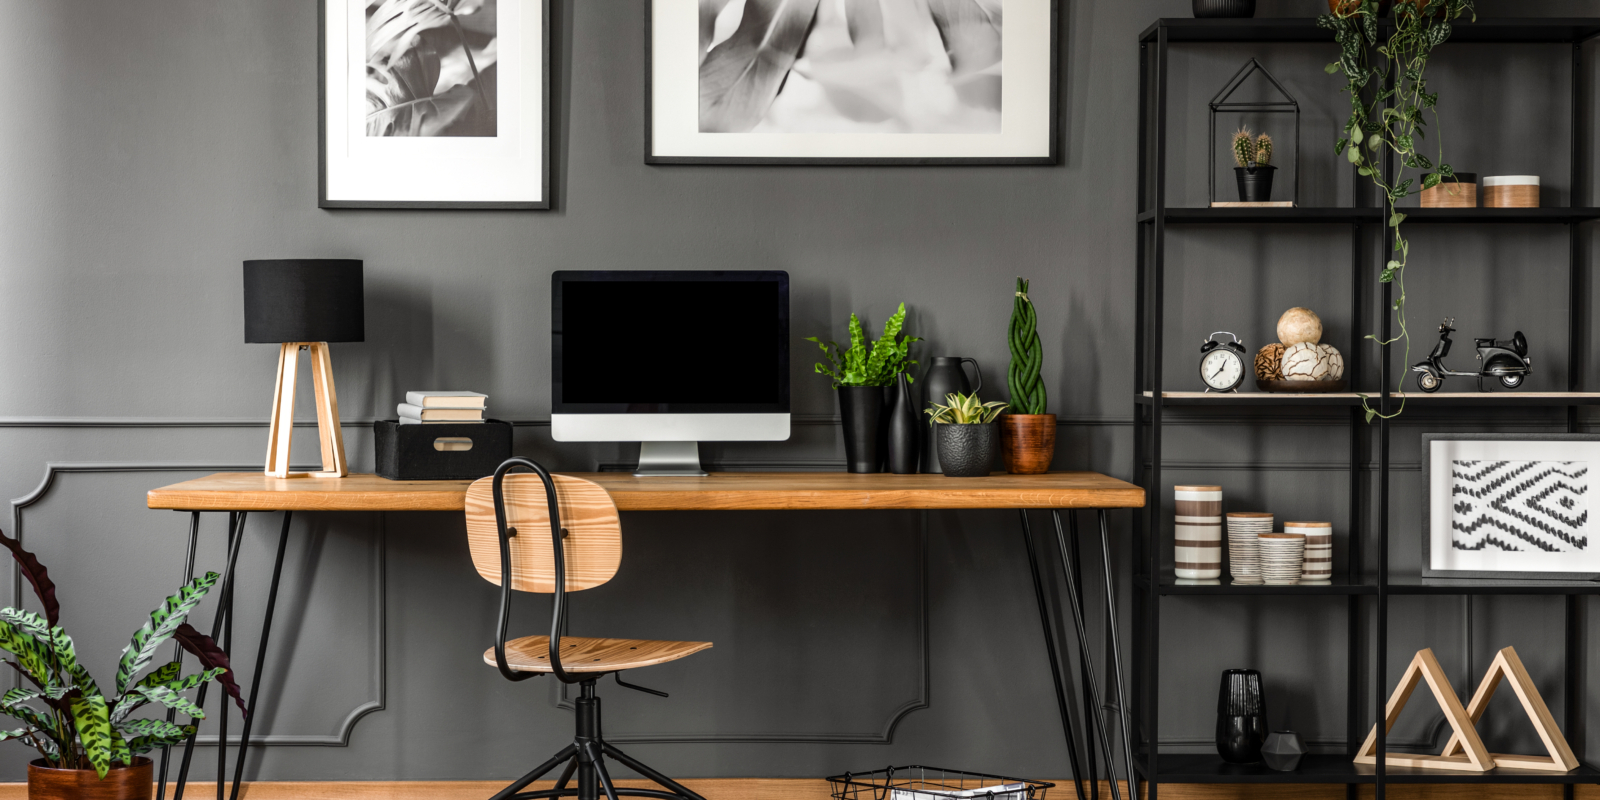 Modernes Büro in dunklen Farben mit Holzboden und -Elementen, Deko-Objekte, Pflanzen